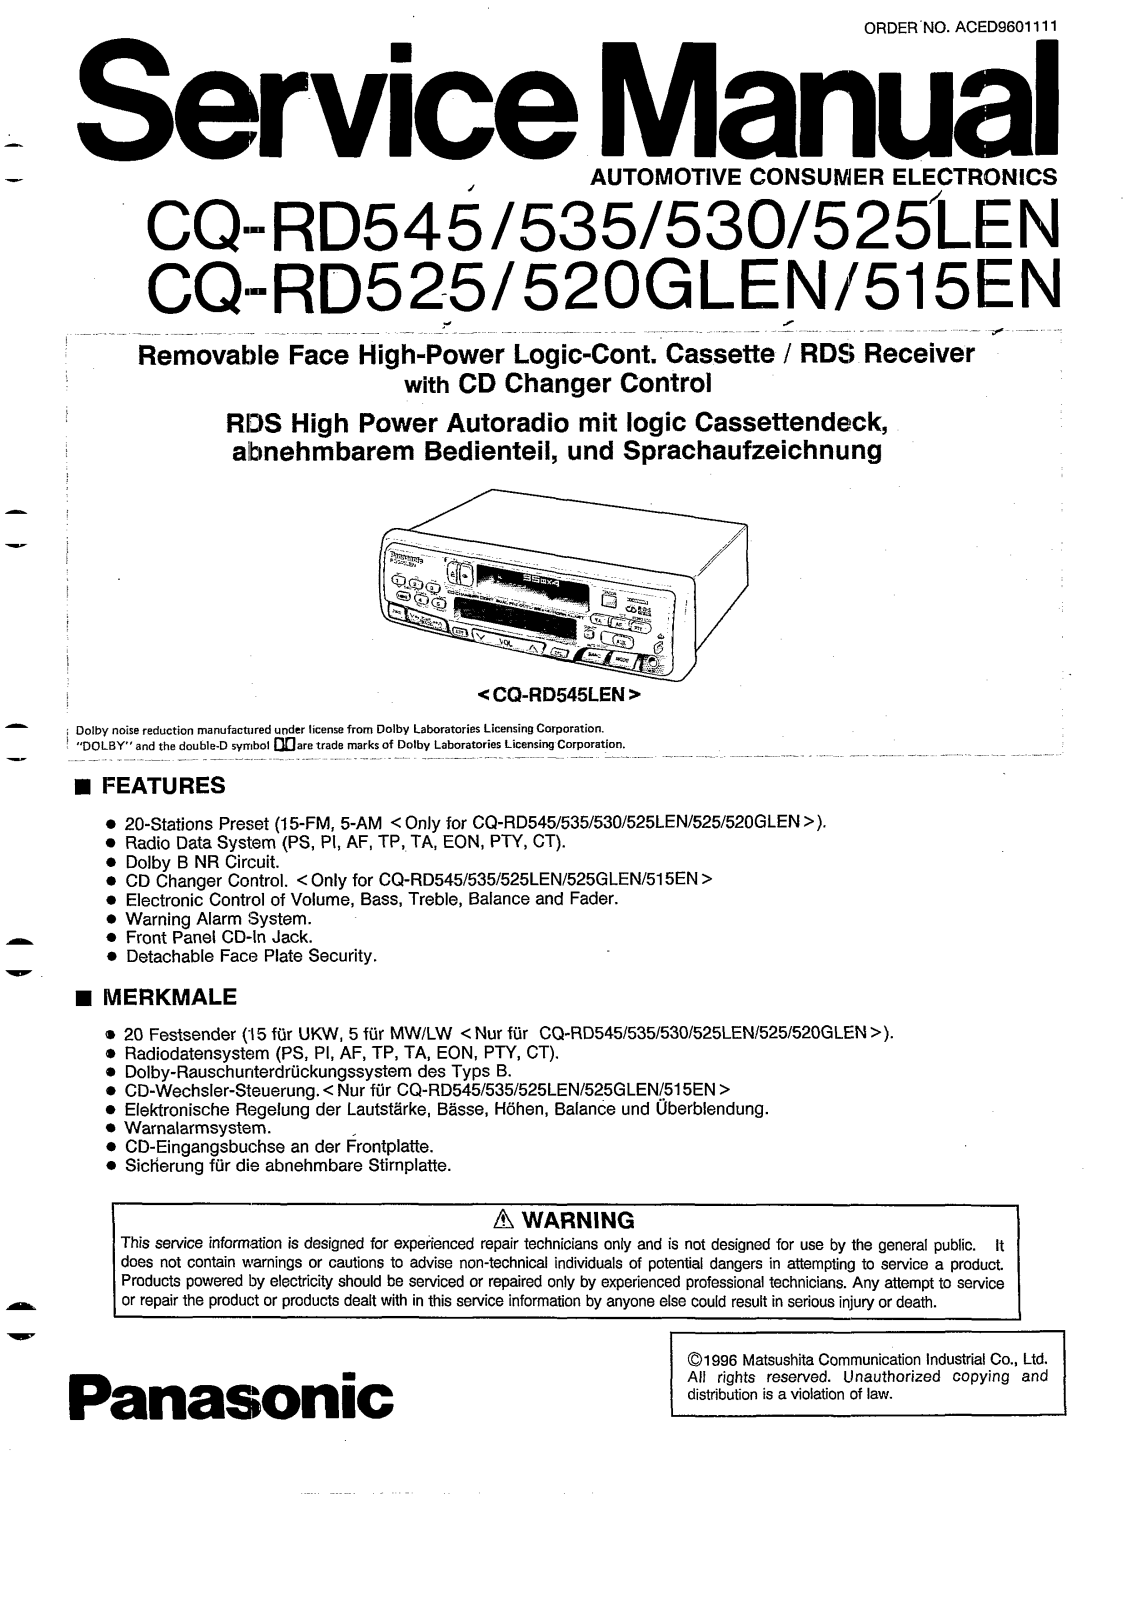 Panasonic CQRD-515-EN, CQRD-520-GLEN, CQRD-525, CQRD-525-LEN, CQRD-530 Service manual